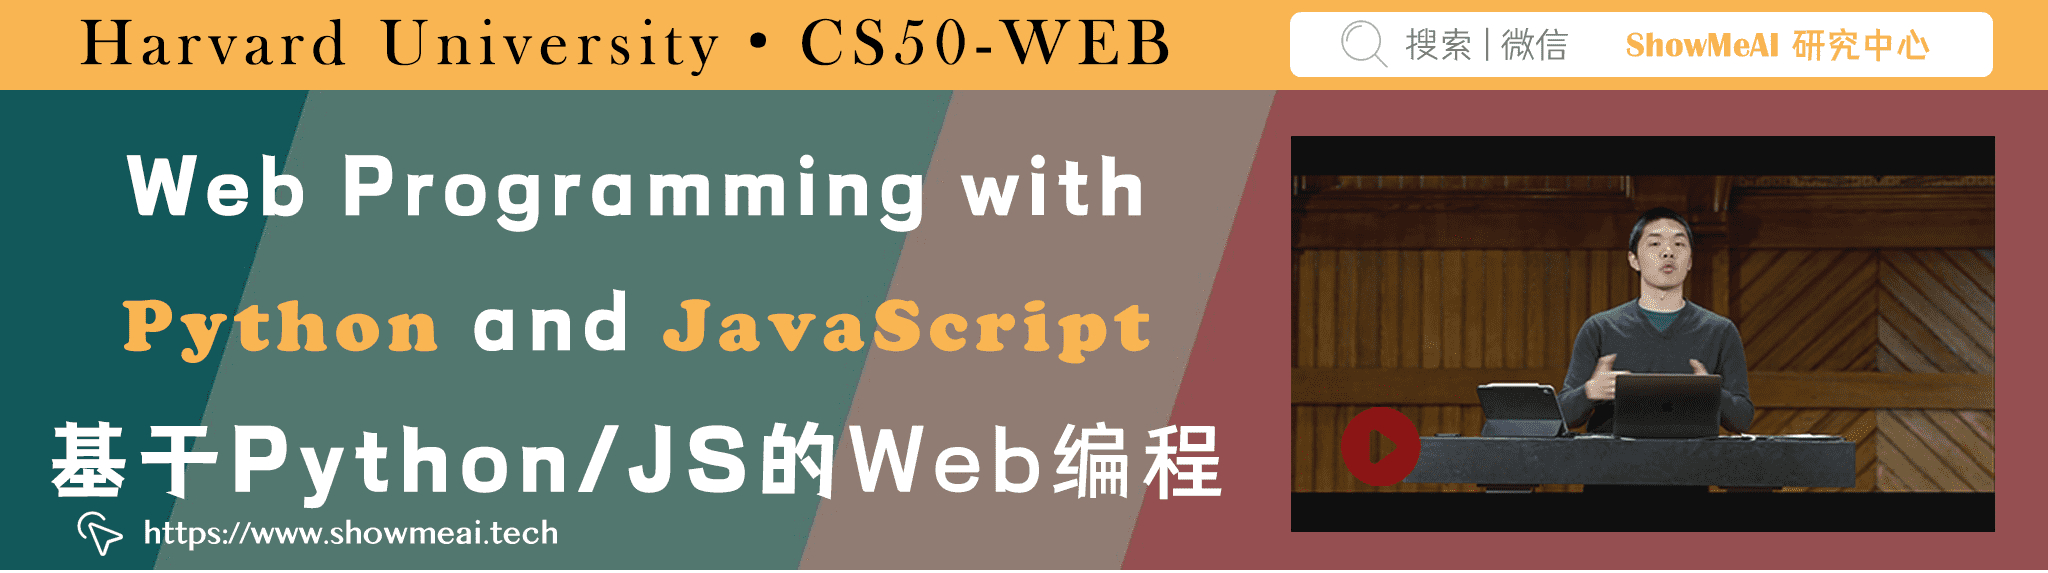 CS50; Web Programming with Python and JavaScript